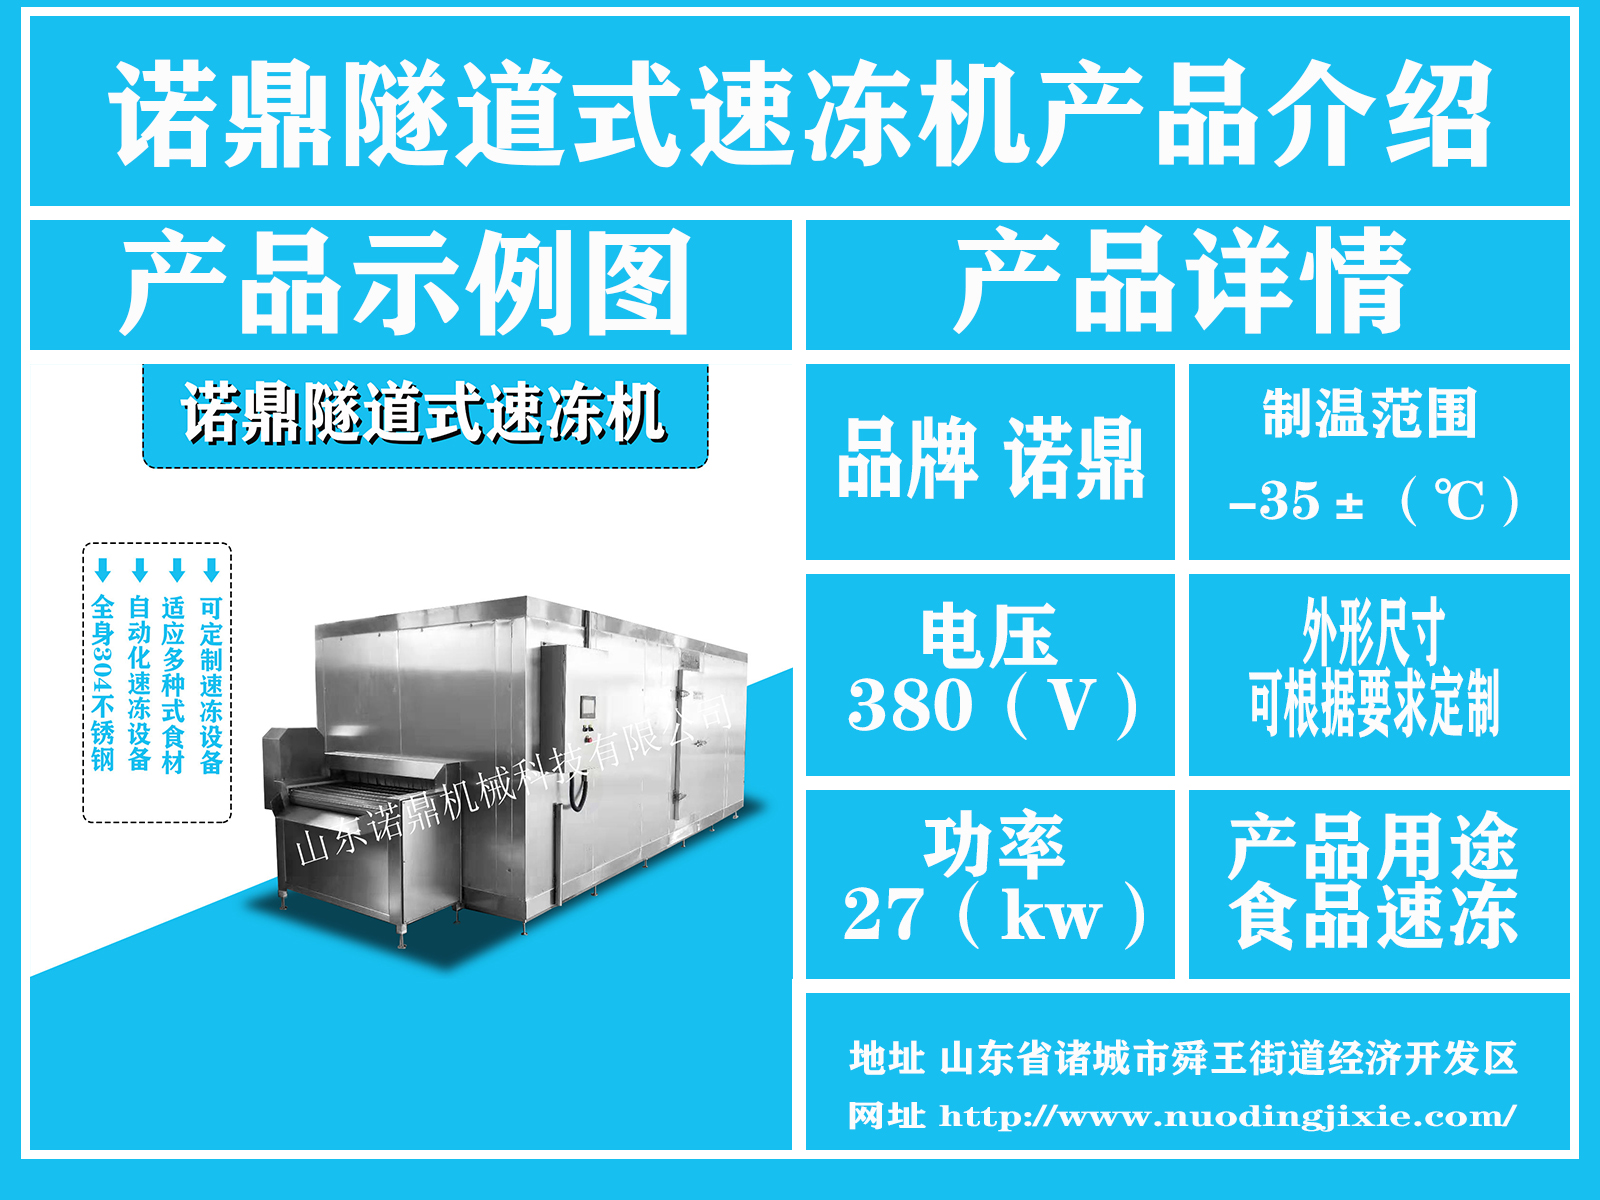 丸子速冻机 可定制隧道式速冻机 厂家直销品质保证 水饺速冻设备